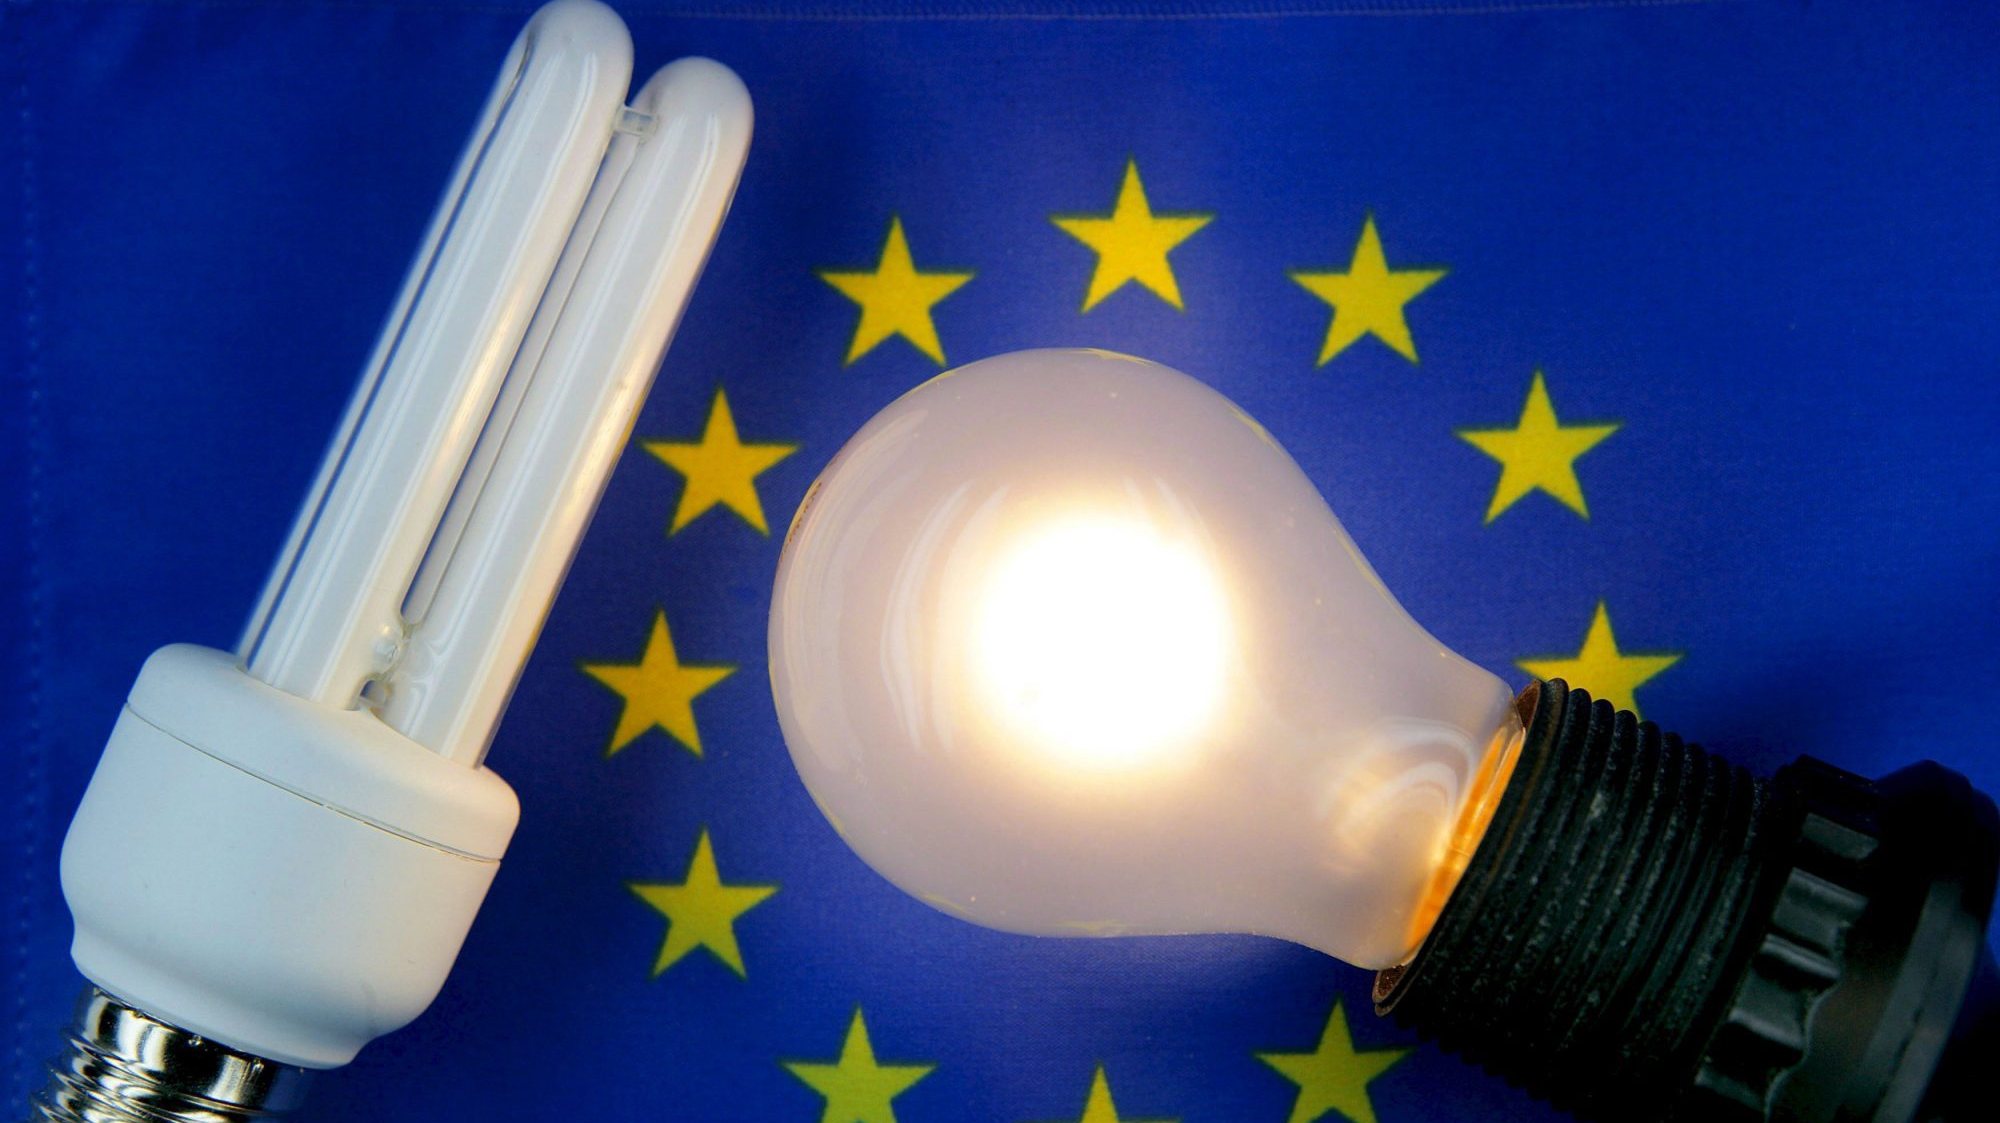 Elena Lymberidi-Settimo, diretora política da EEB diz que a Comissão Europeia nada fez em cinco anos, permitindo que as lâmpadas continuassem no mercado